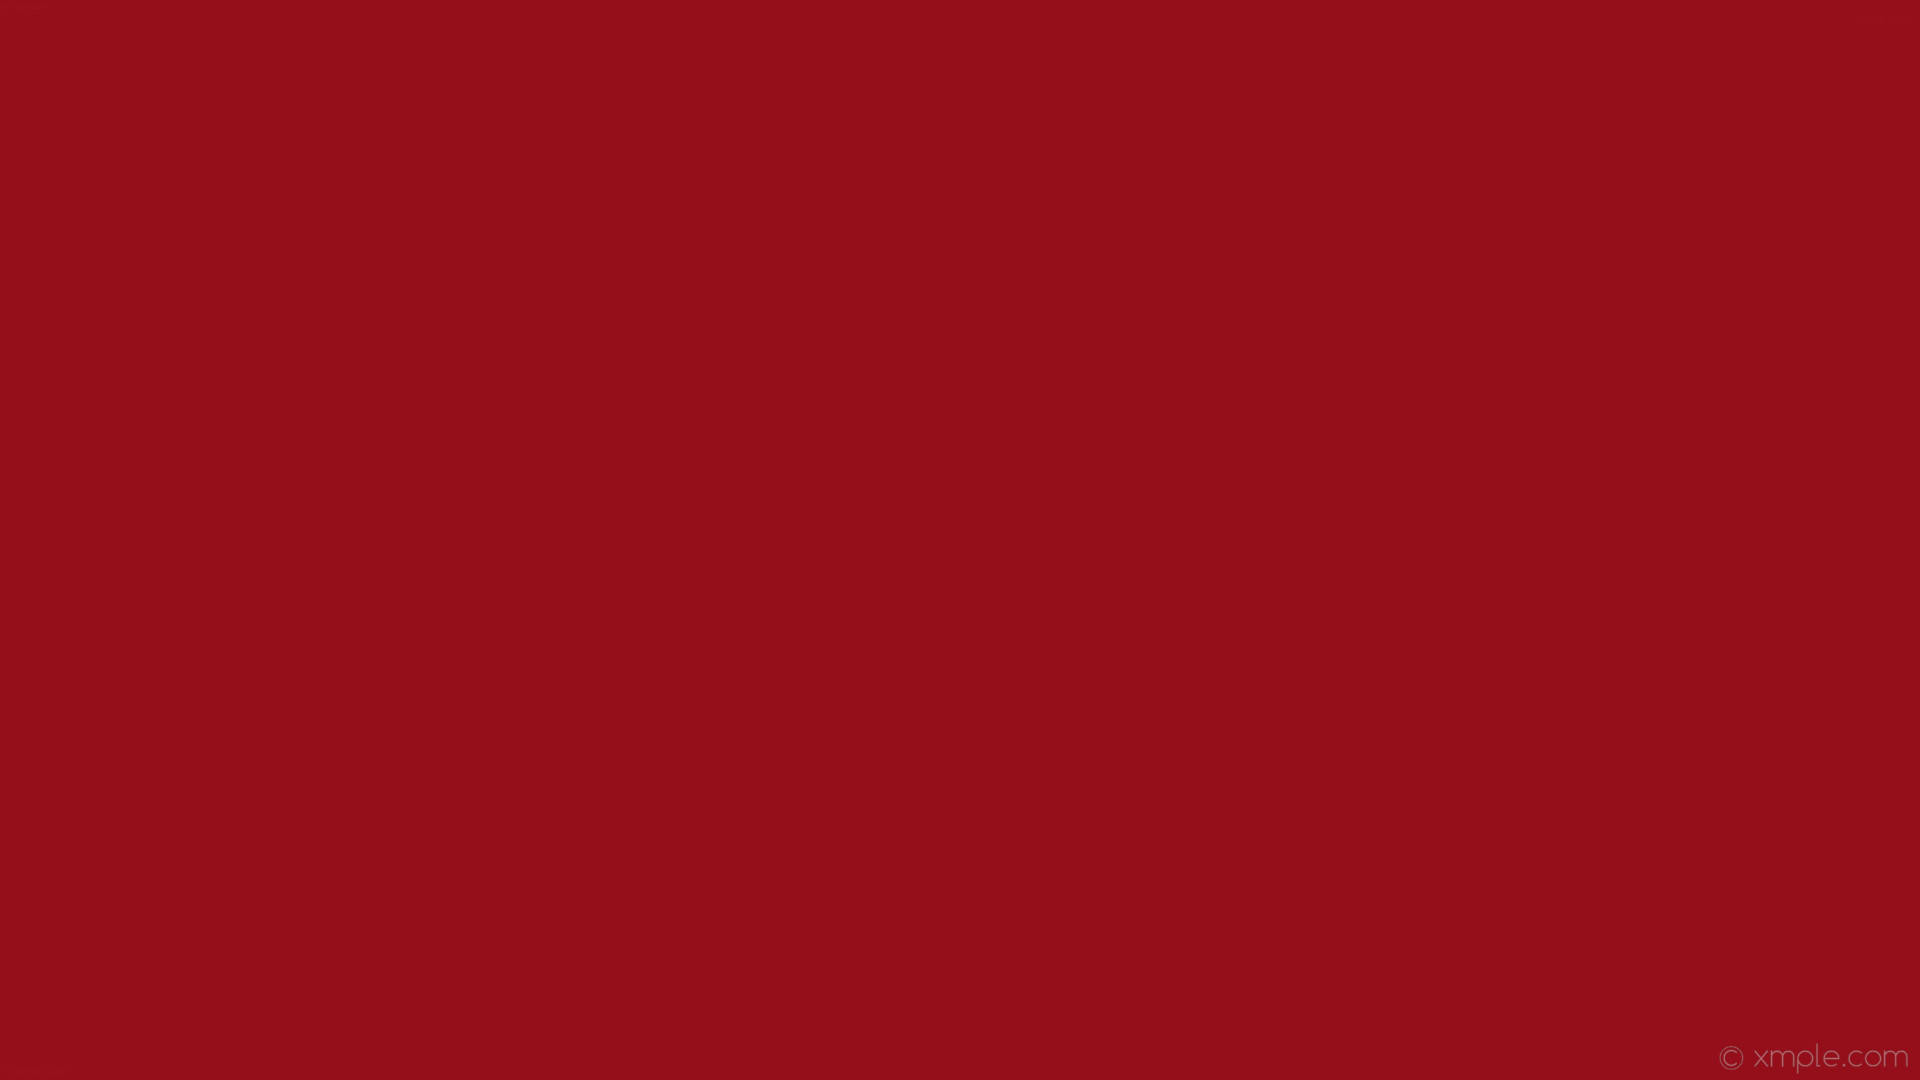 Plain Red Burgundy Wallpaper